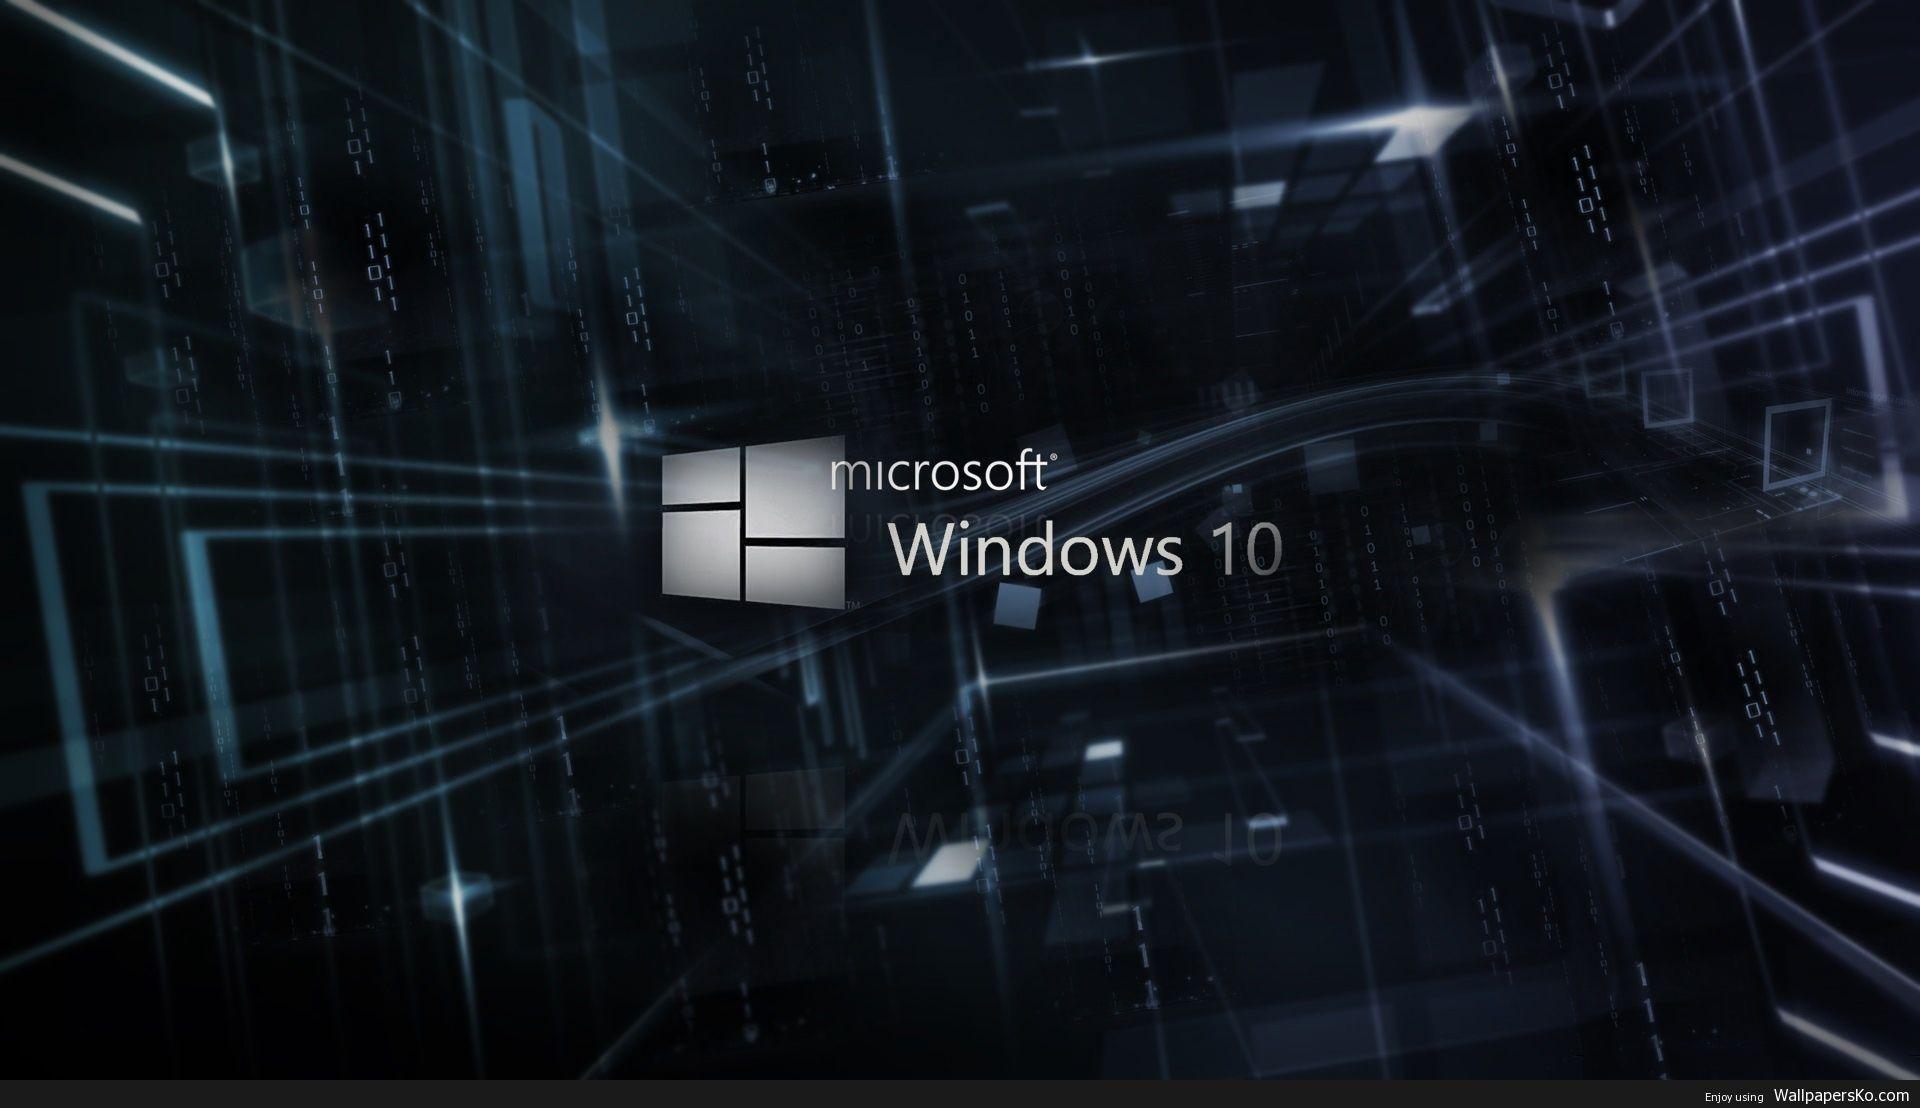 1920x1108 Hình nền Windows 10 4K (1920x1108 px)